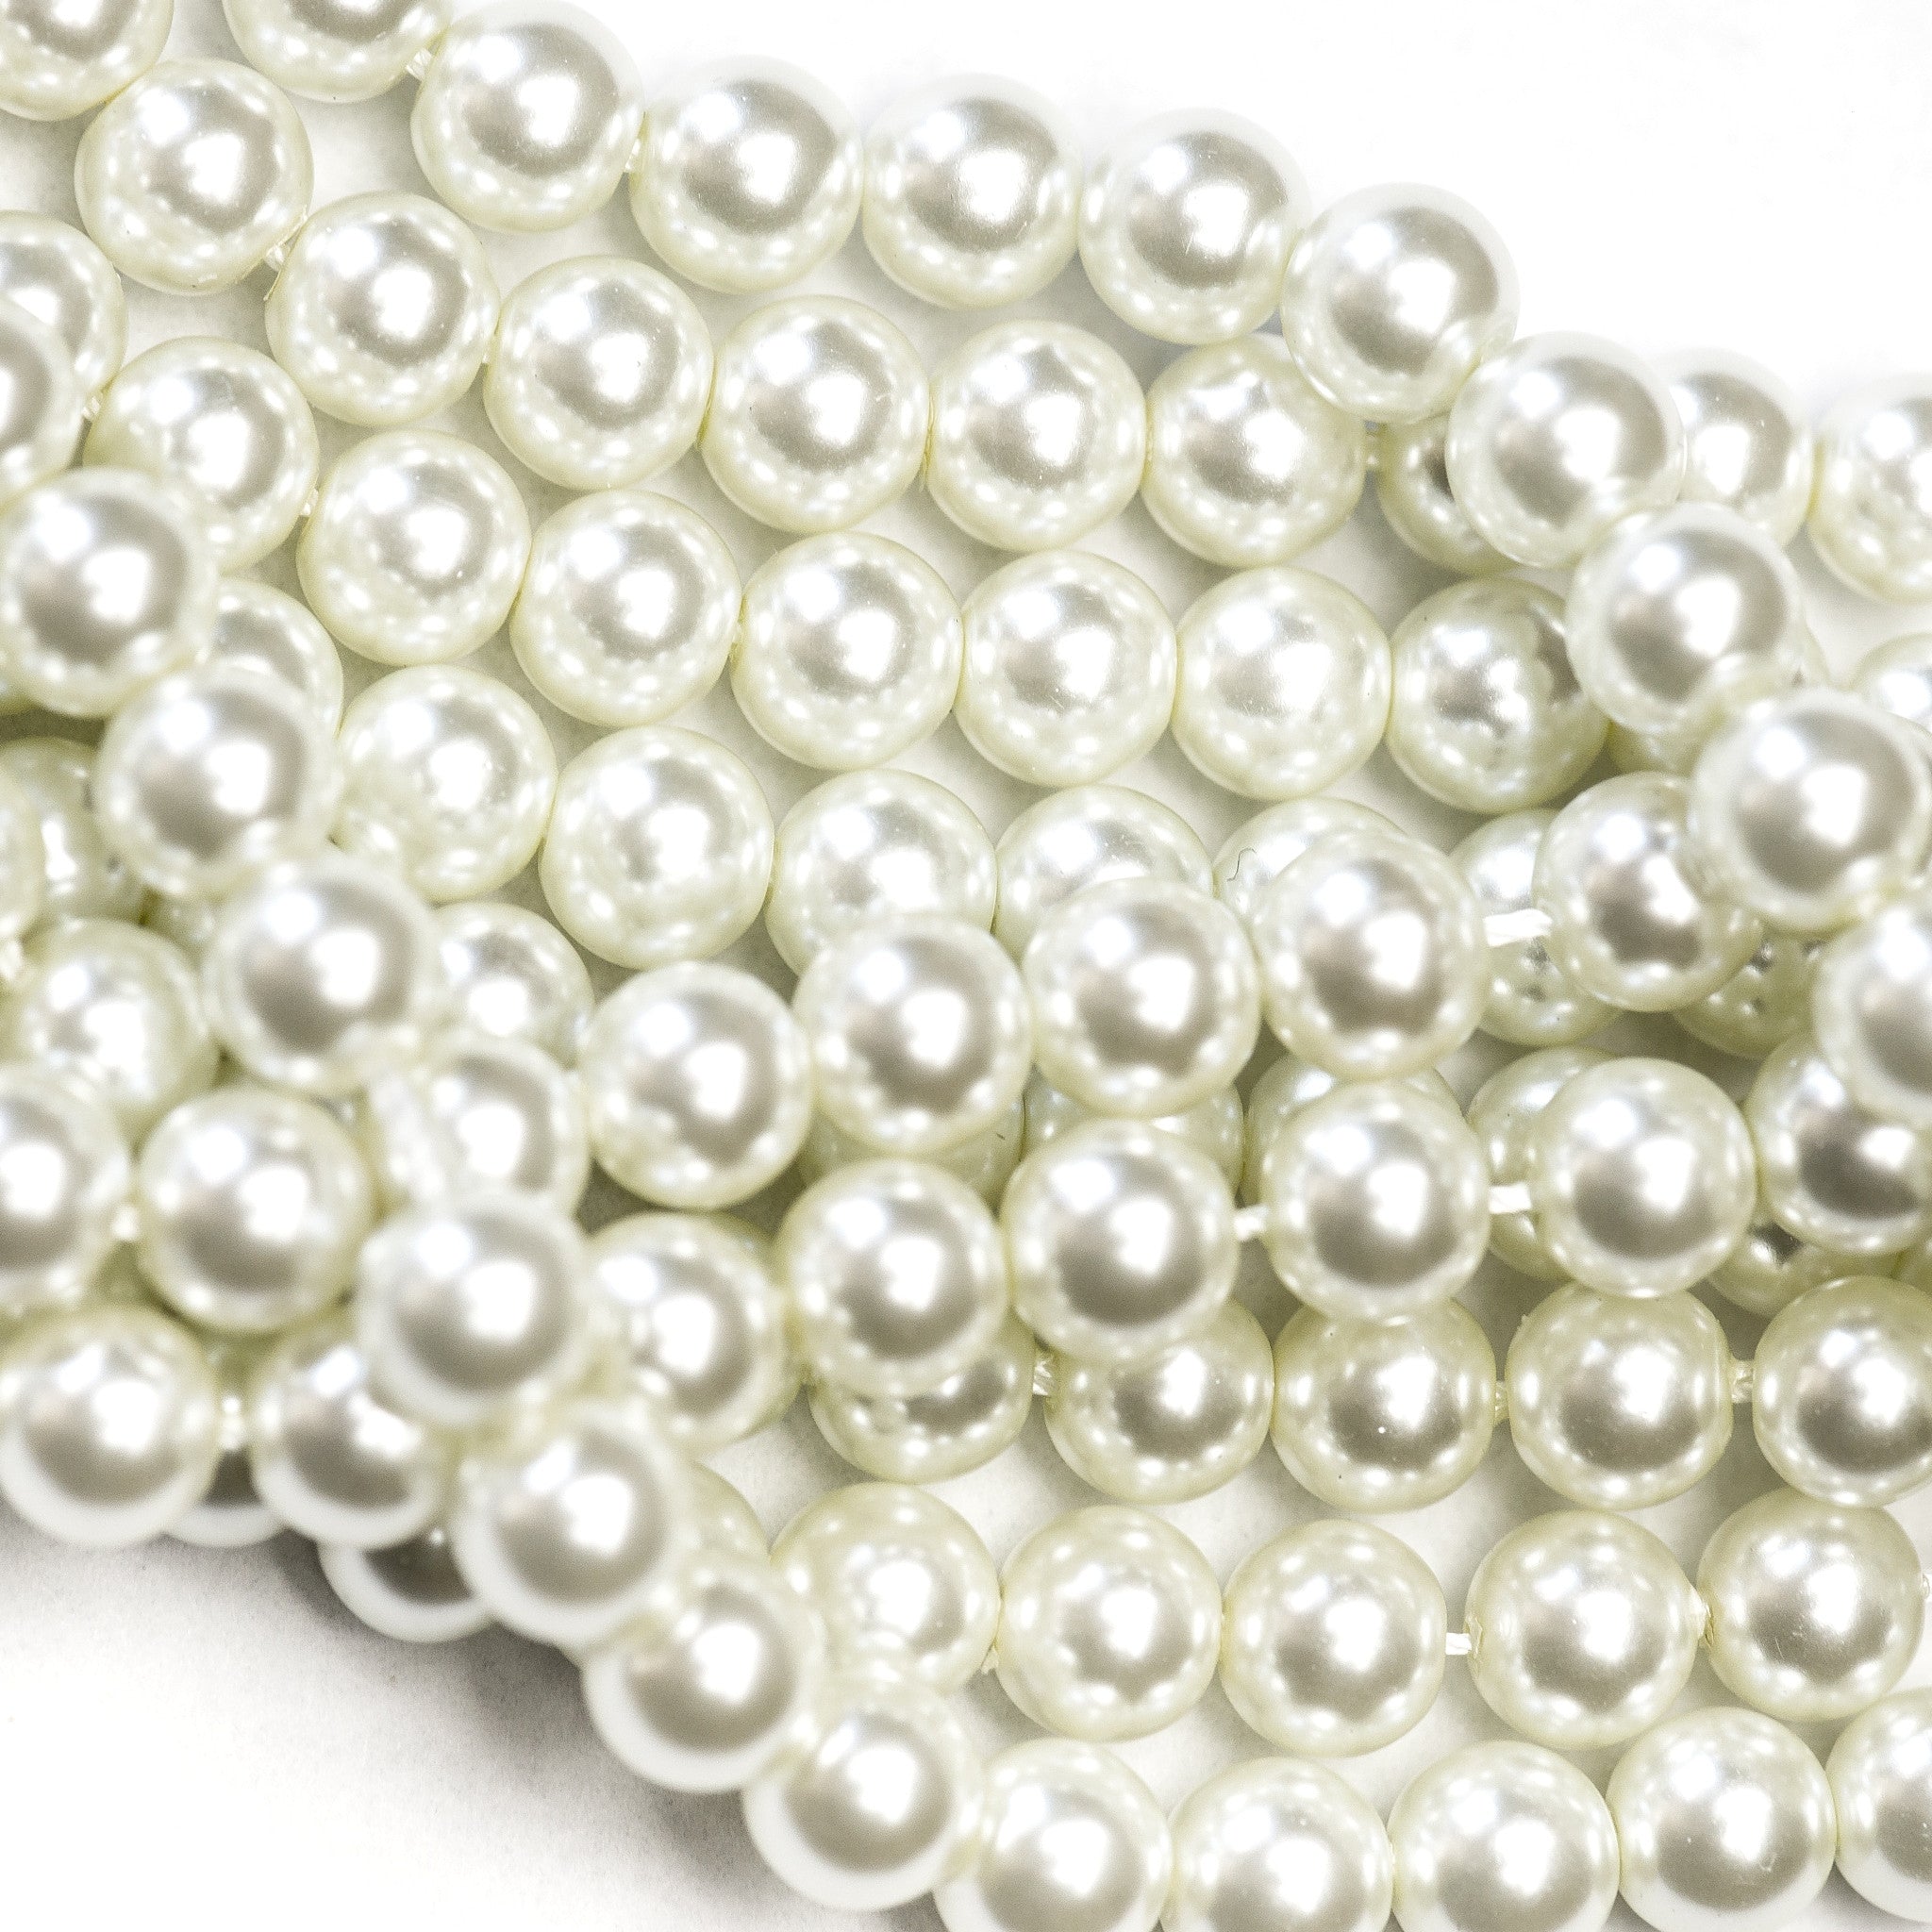 4MM White Glass Pearls 16" (1 dozen strands)